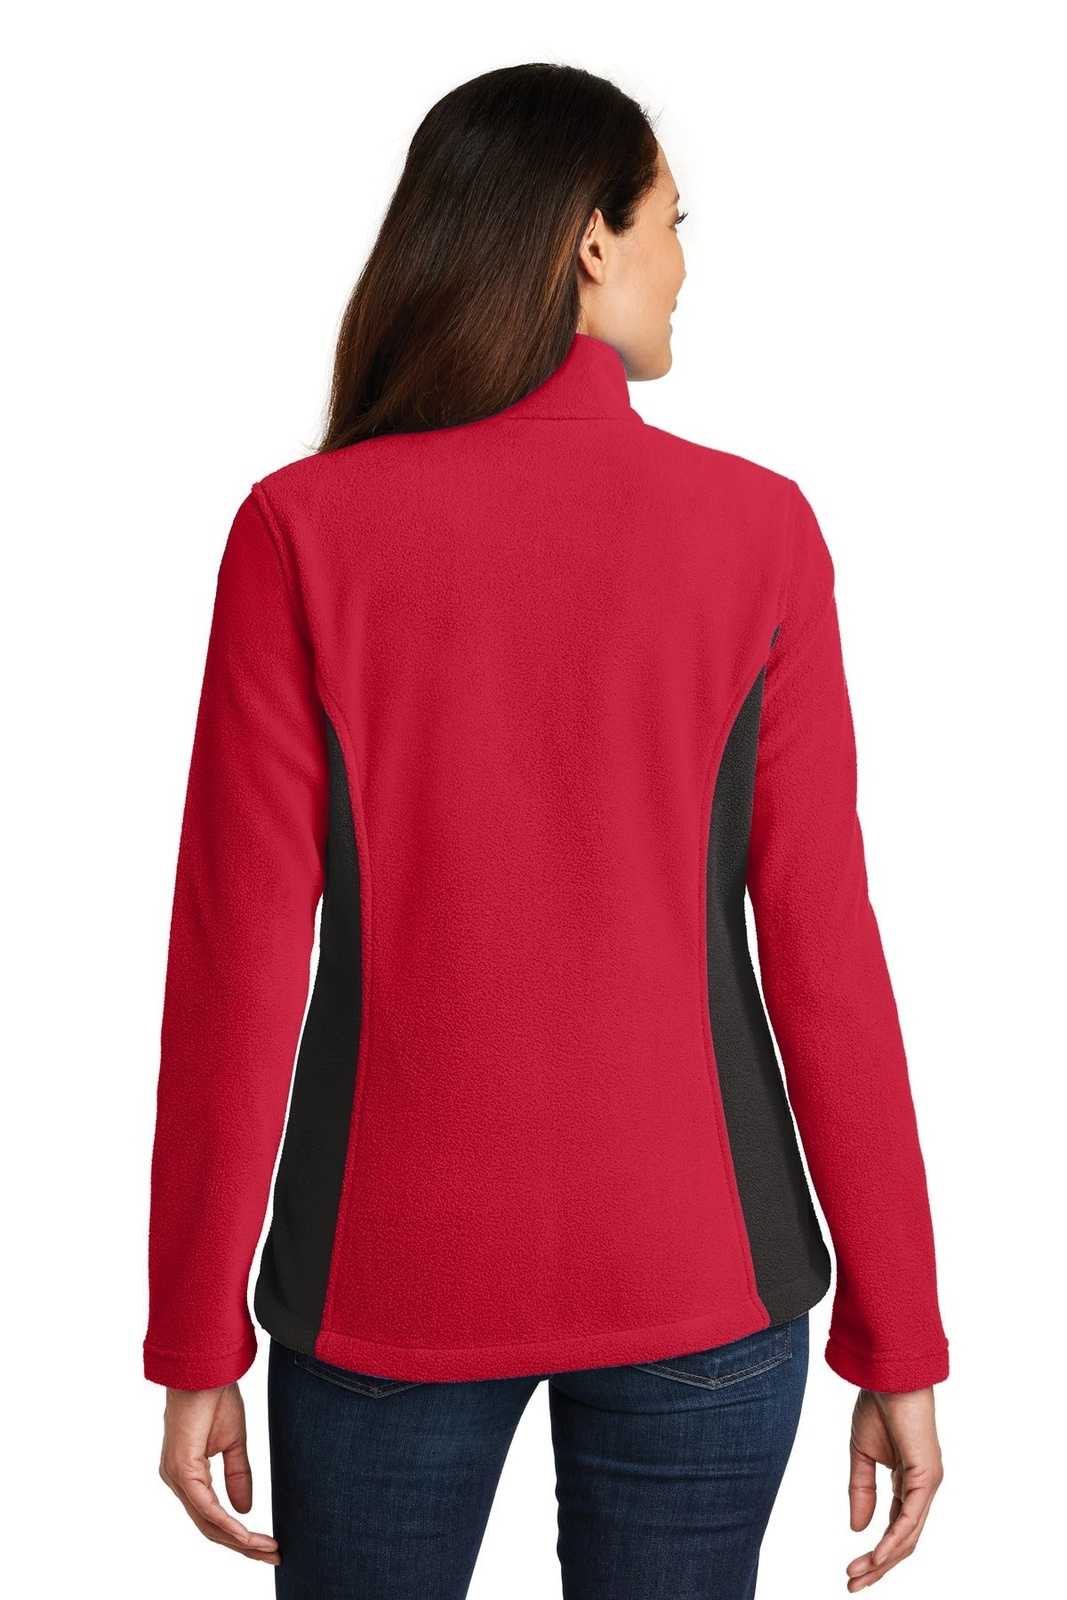 Port Authority L216 Ladies Colorblock Value Fleece Jacket - Rich Red Black - HIT a Double - 2